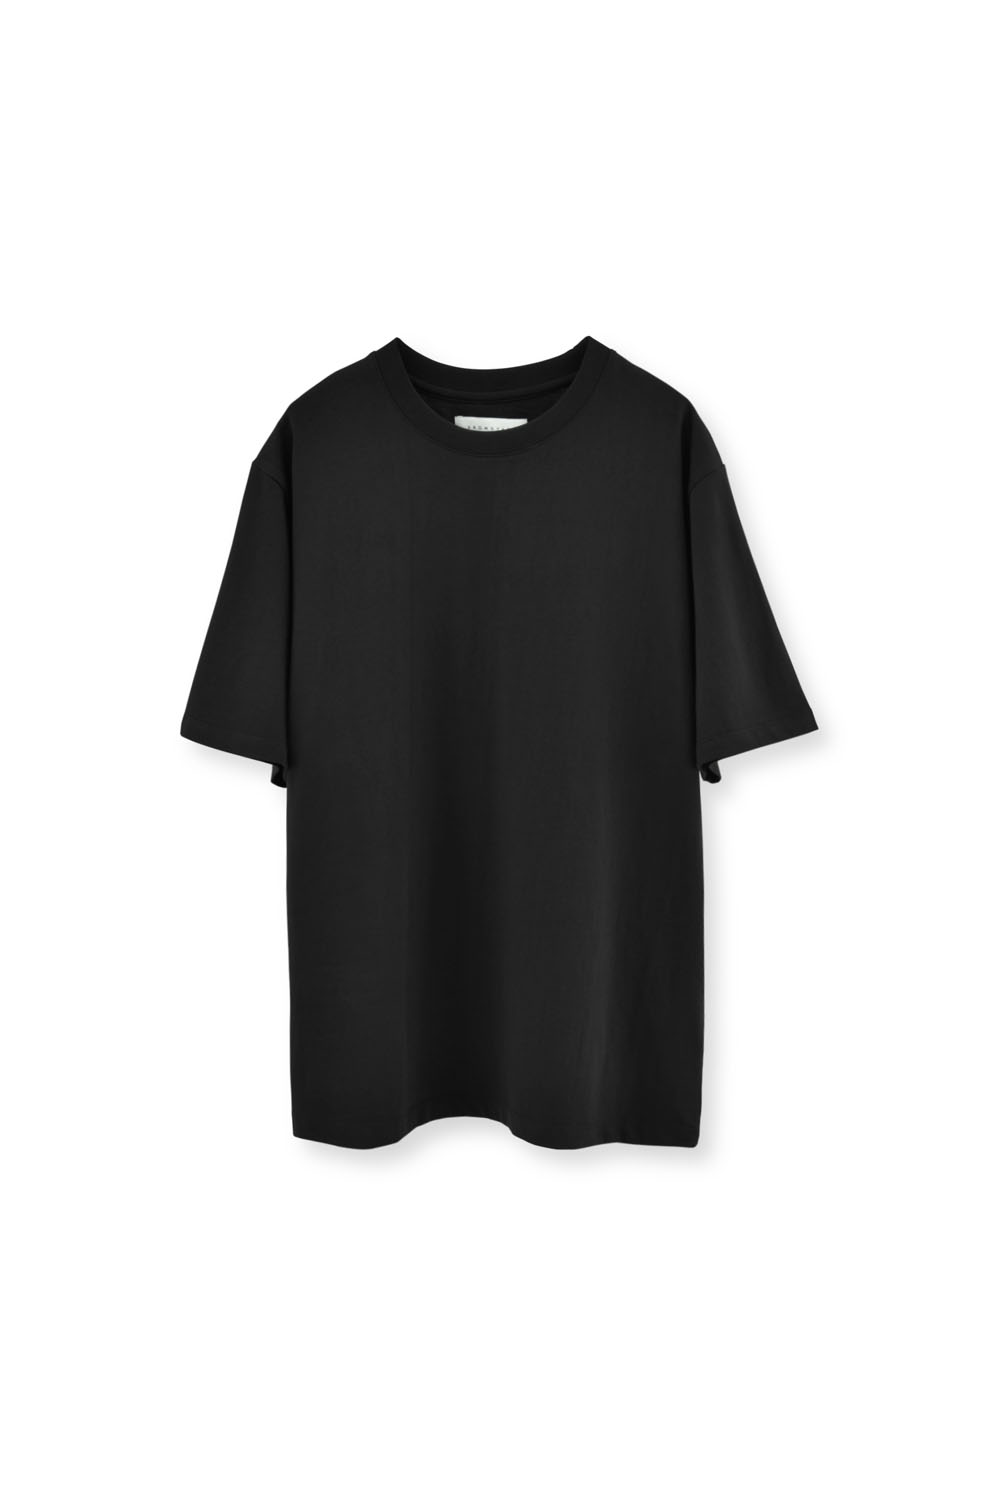 Essential T Shirt_Black